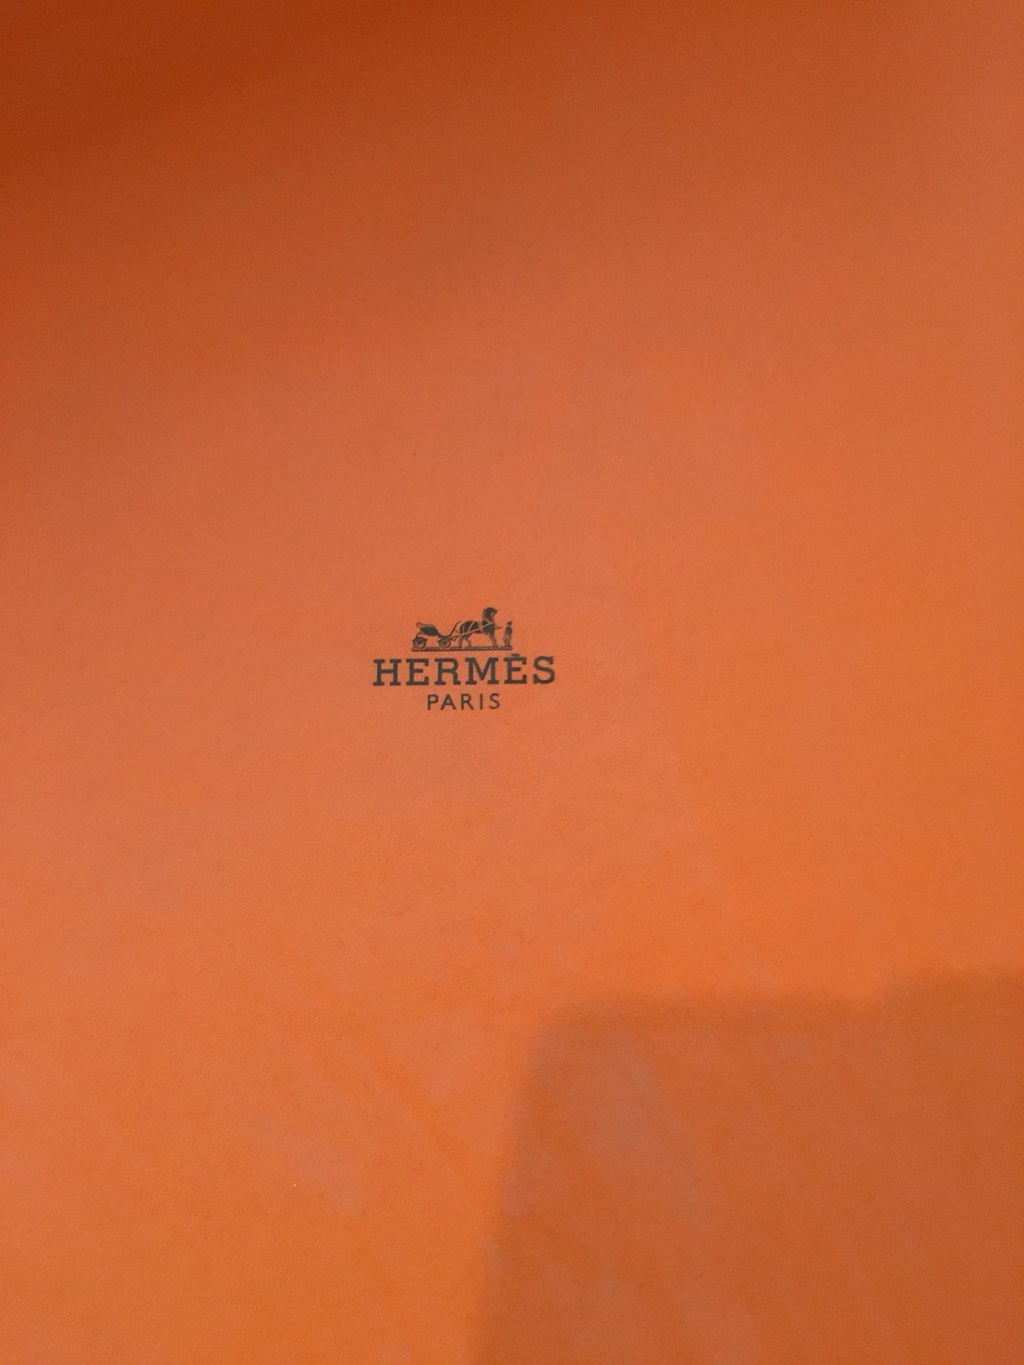 HERMES（エルメス）のロゴ